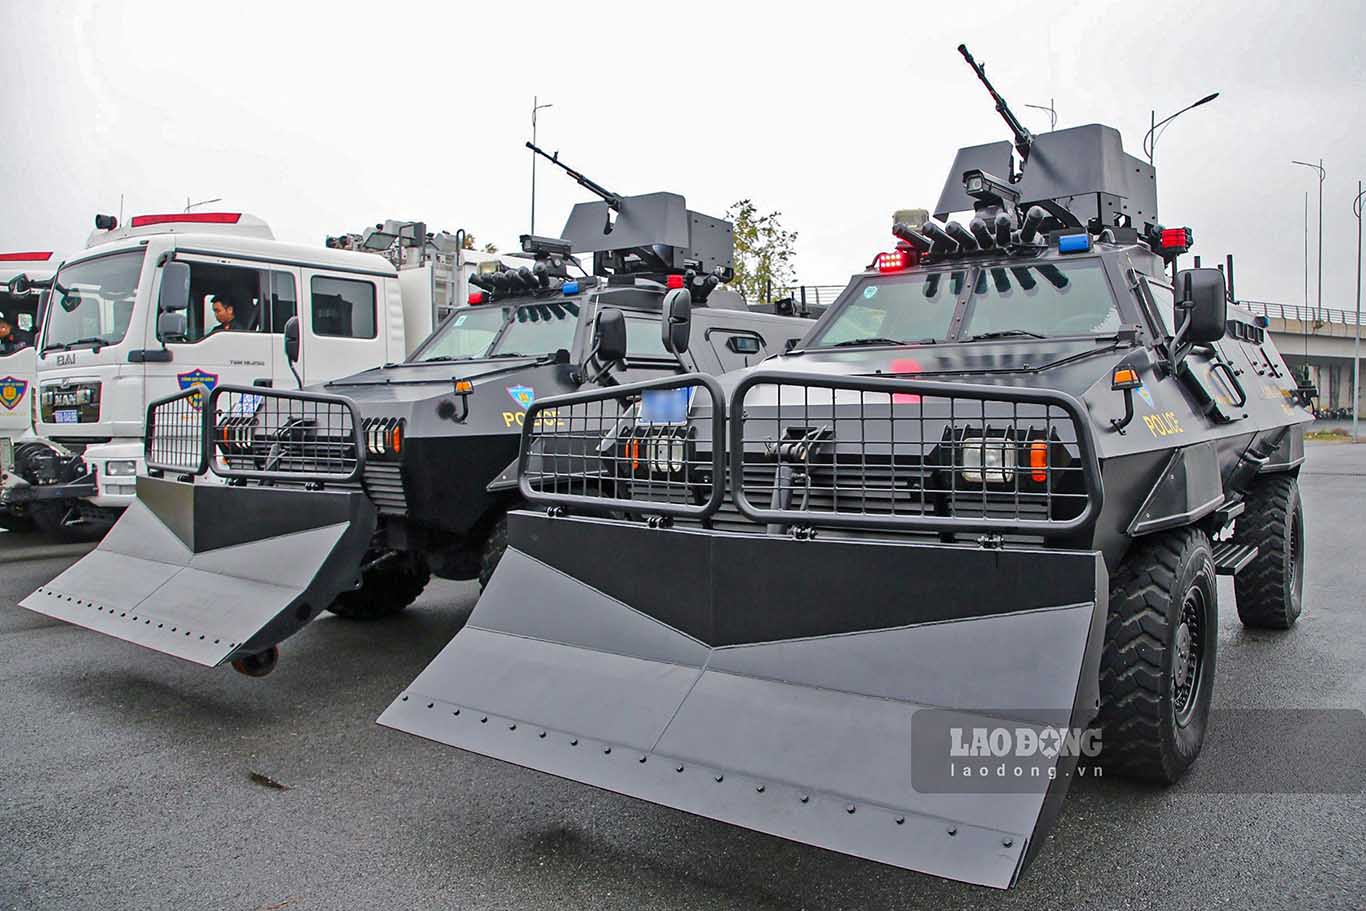 Trong dàn 100 trang thiết bị, xe đặc chủng tham gia diễu hành còn có xe bọc thép đặc chủng S5. S5 có nhiệm vụ chống khủng bố, gây rối, giải cứu con tin và xử lý các tình huống khẩn cấp.